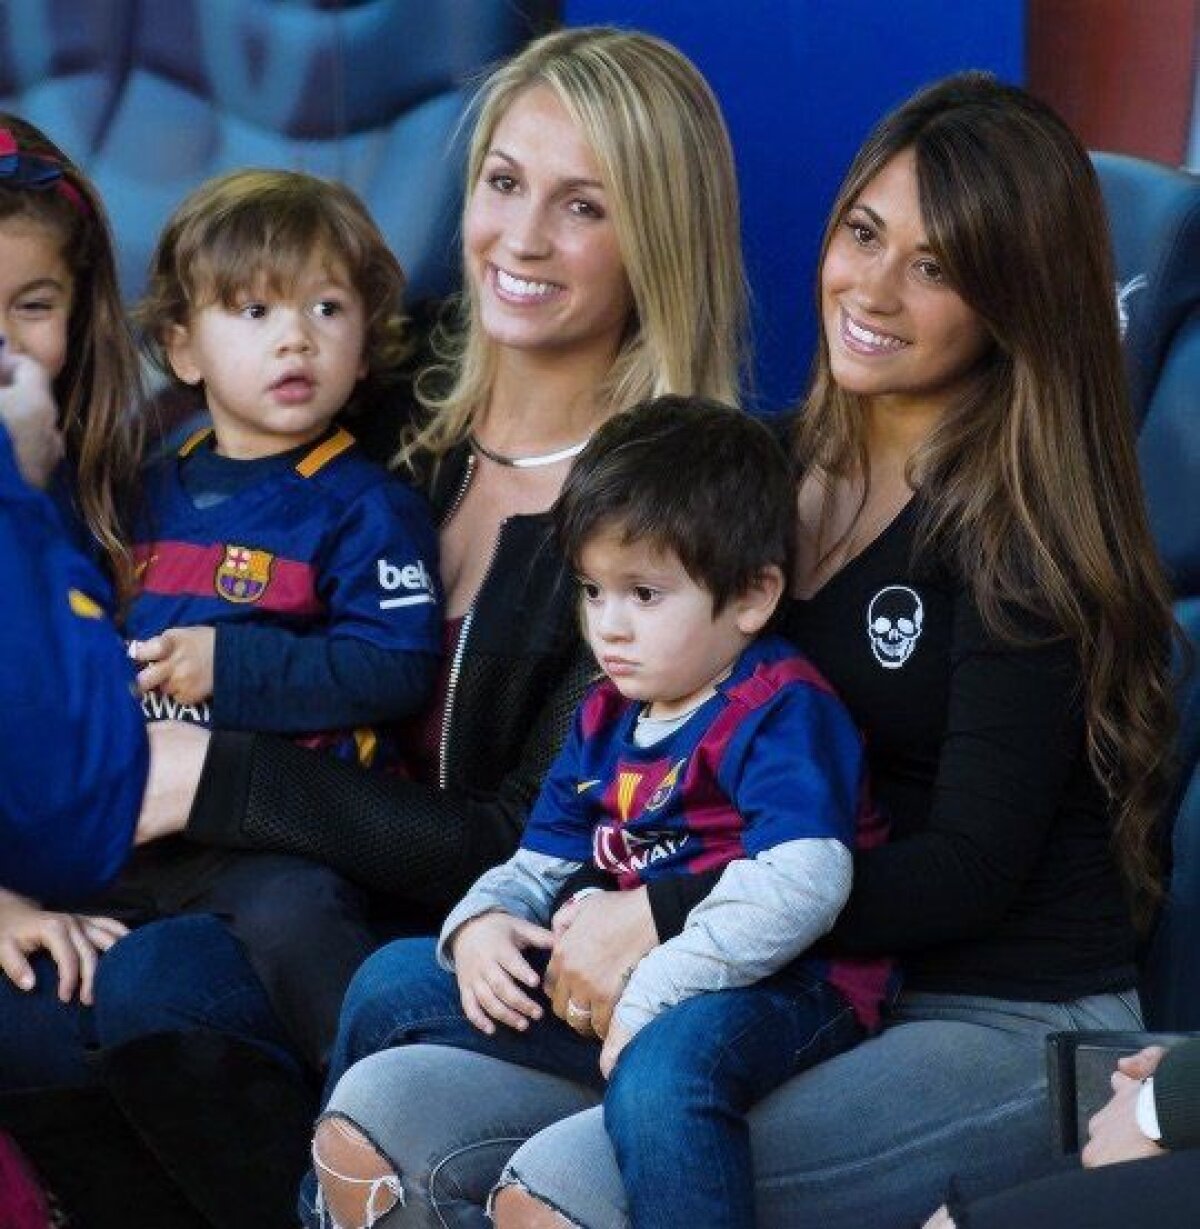 FOTO Femei de succes » Iubitele lui Messi și Suarez fac echipă bună împreună